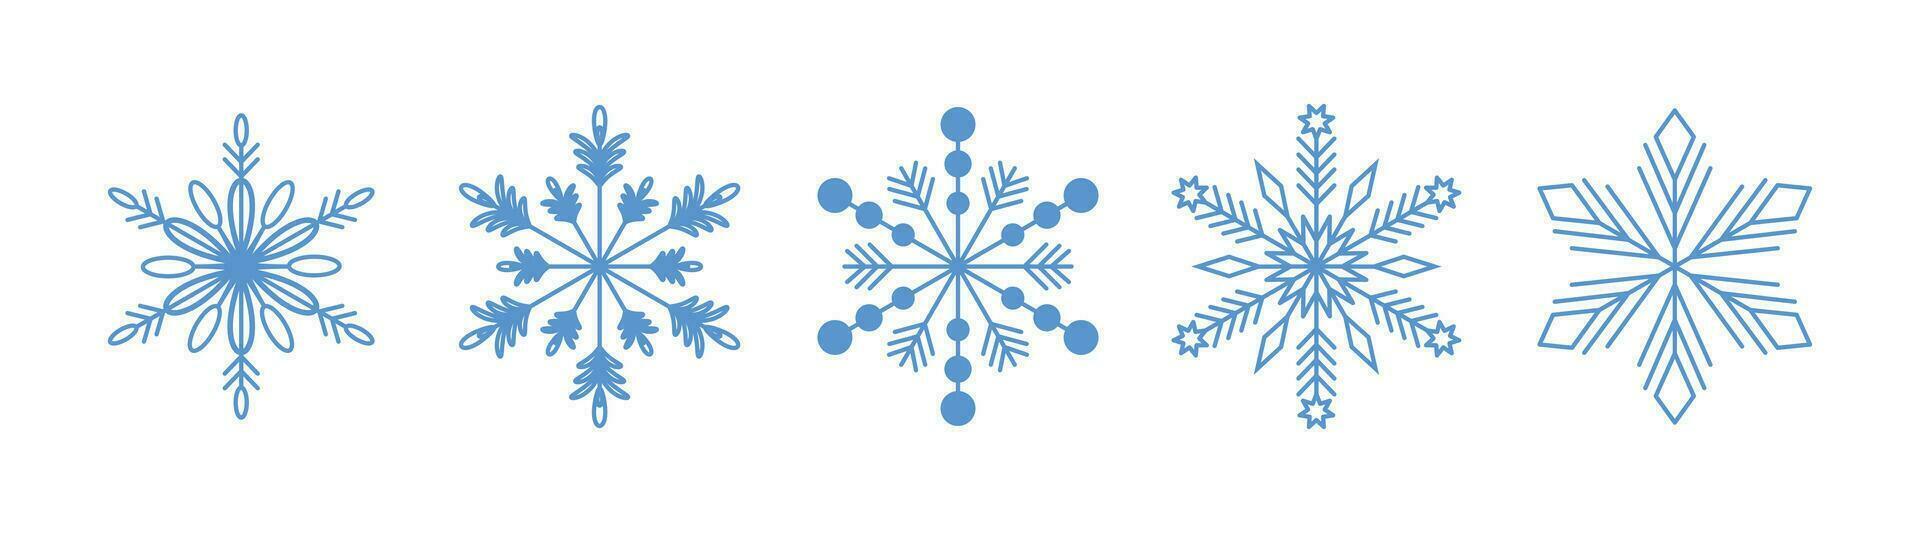 copos de nieve. invierno conjunto de azul copos de nieve aislado en blanco. editable ataque. vector